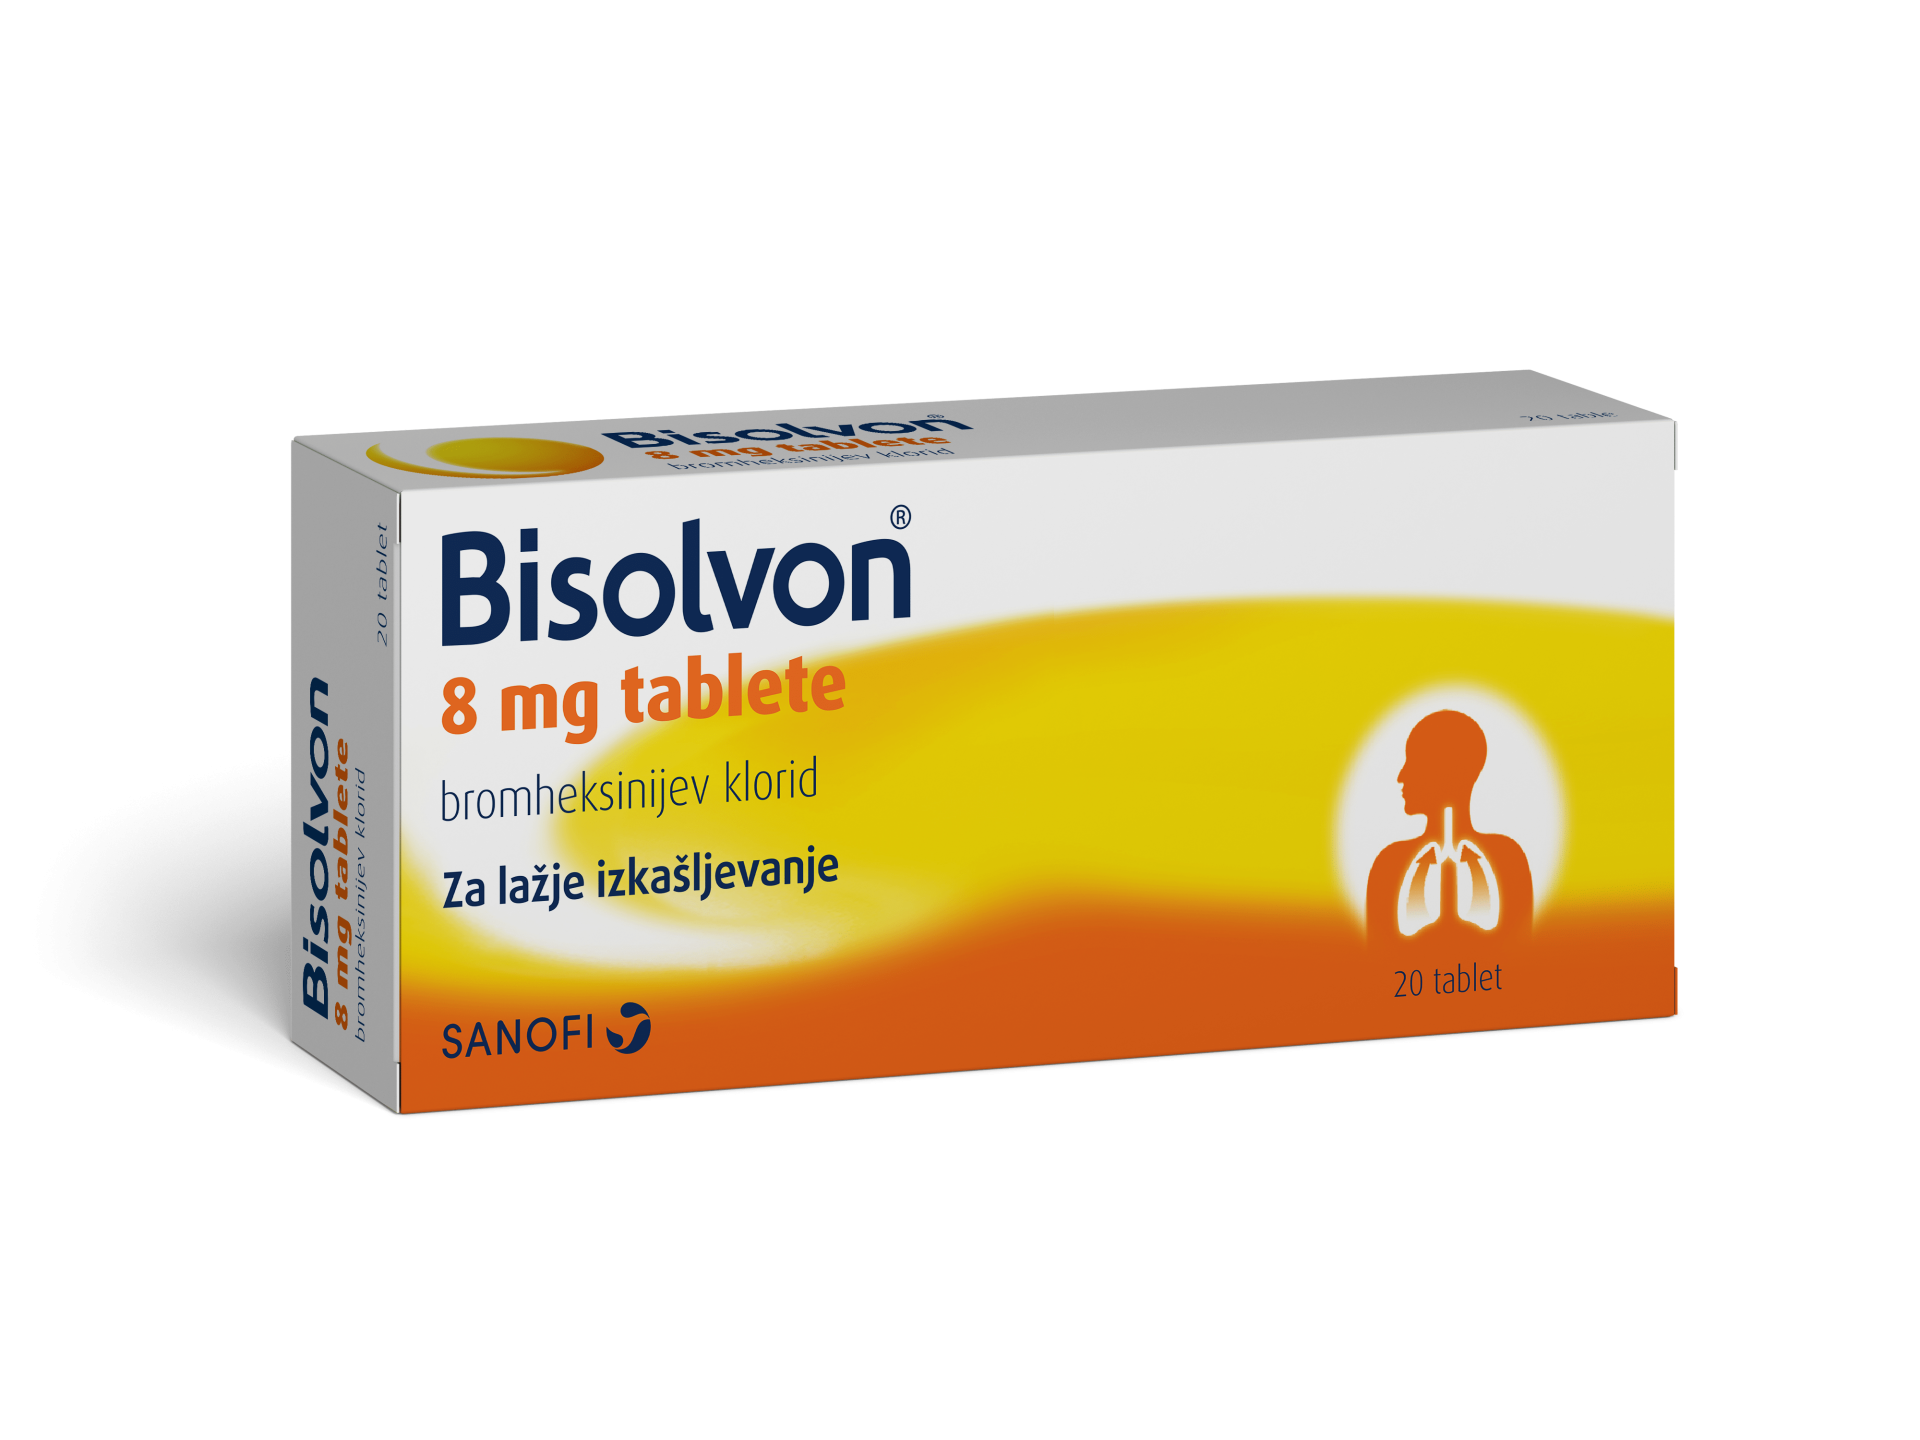 Bisolvon 8 mg tablete, 20 tablet